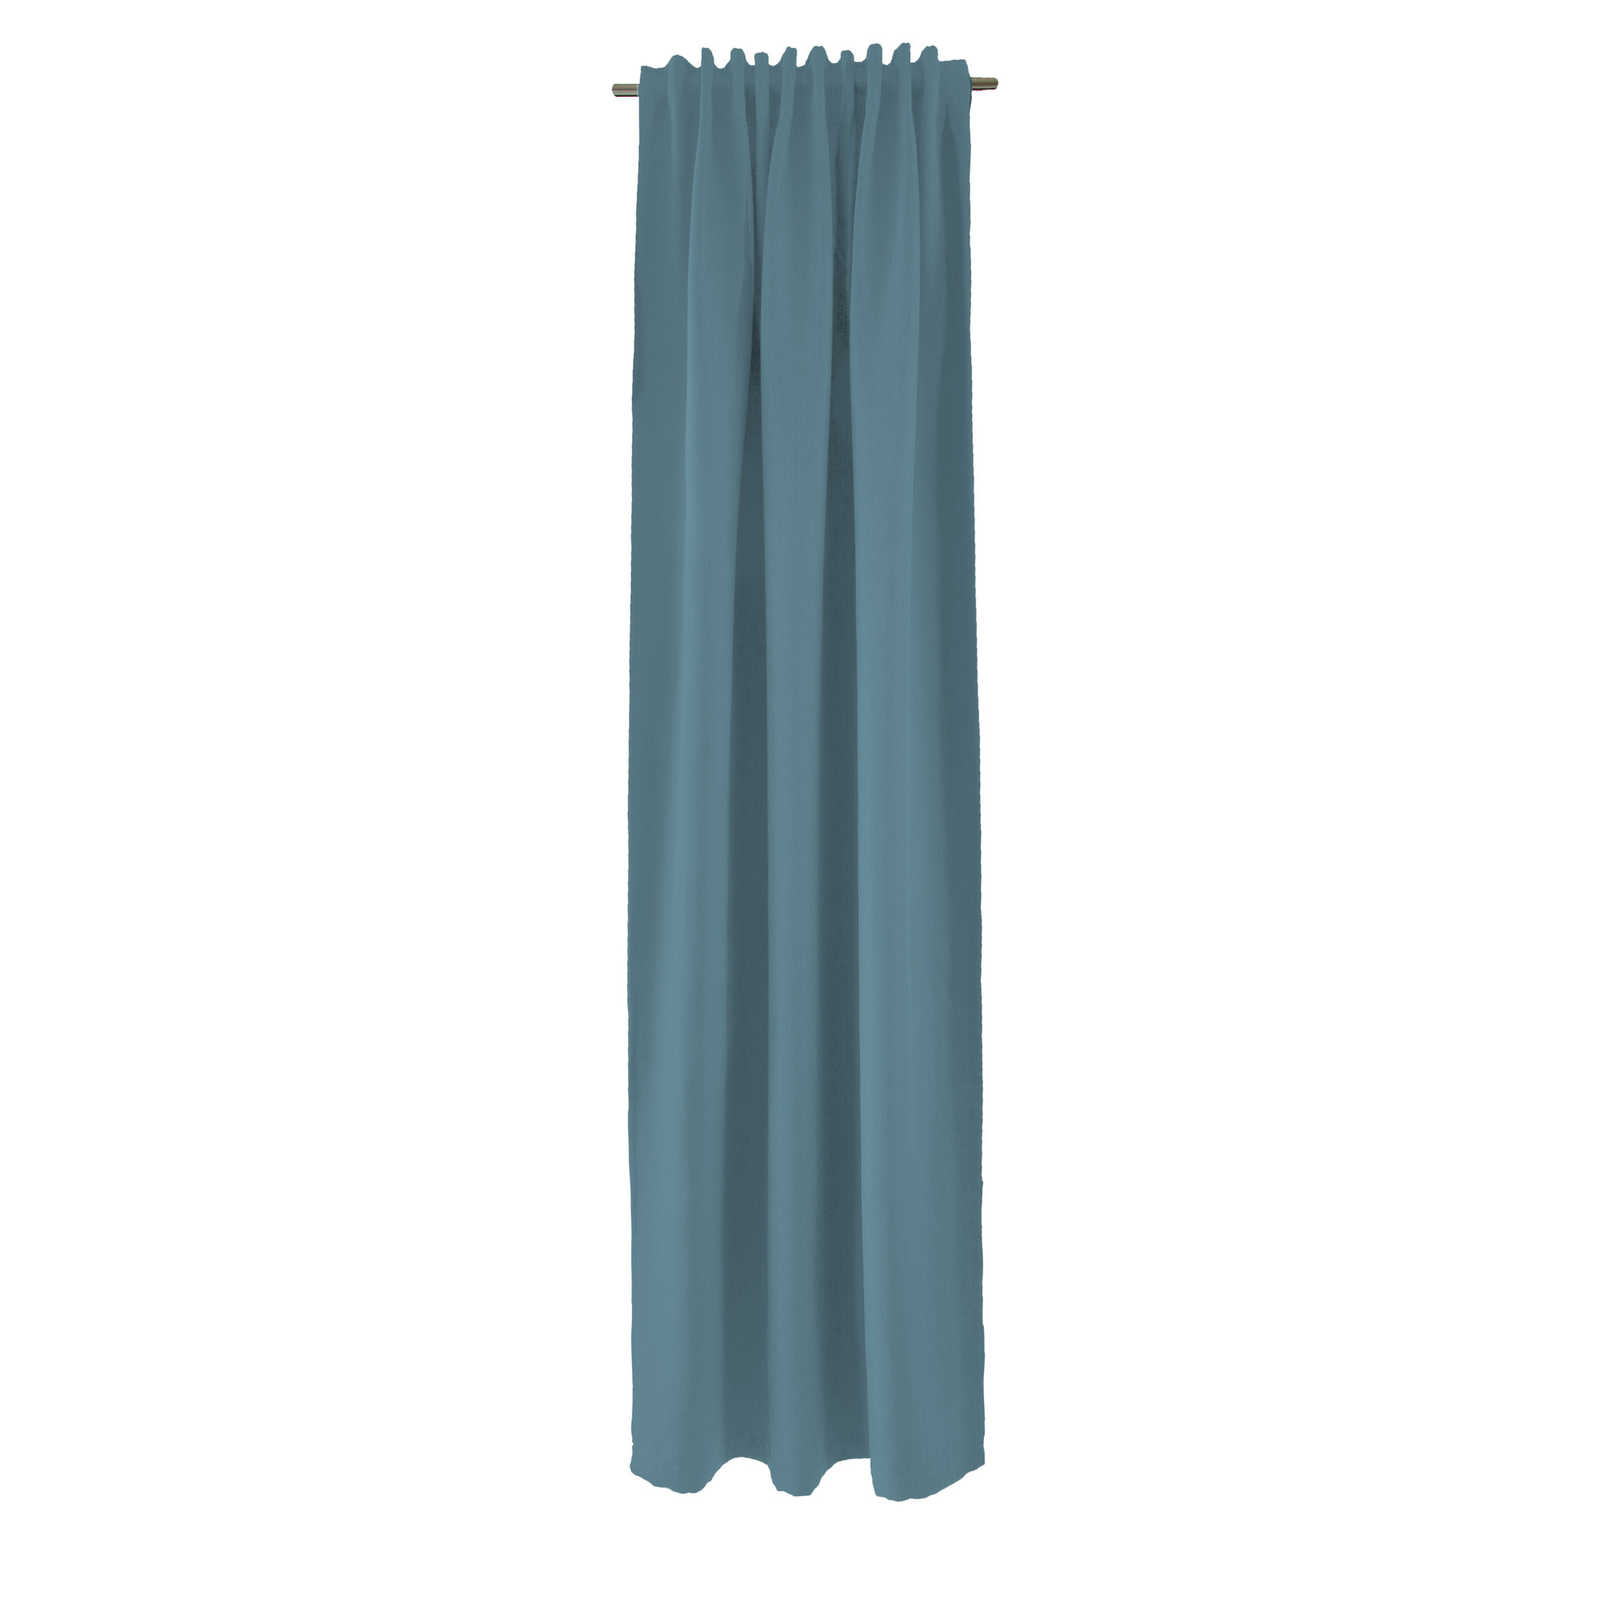 Fular decorativo 140 cm x 245 cm Fibra Artificial Azul Paloma
